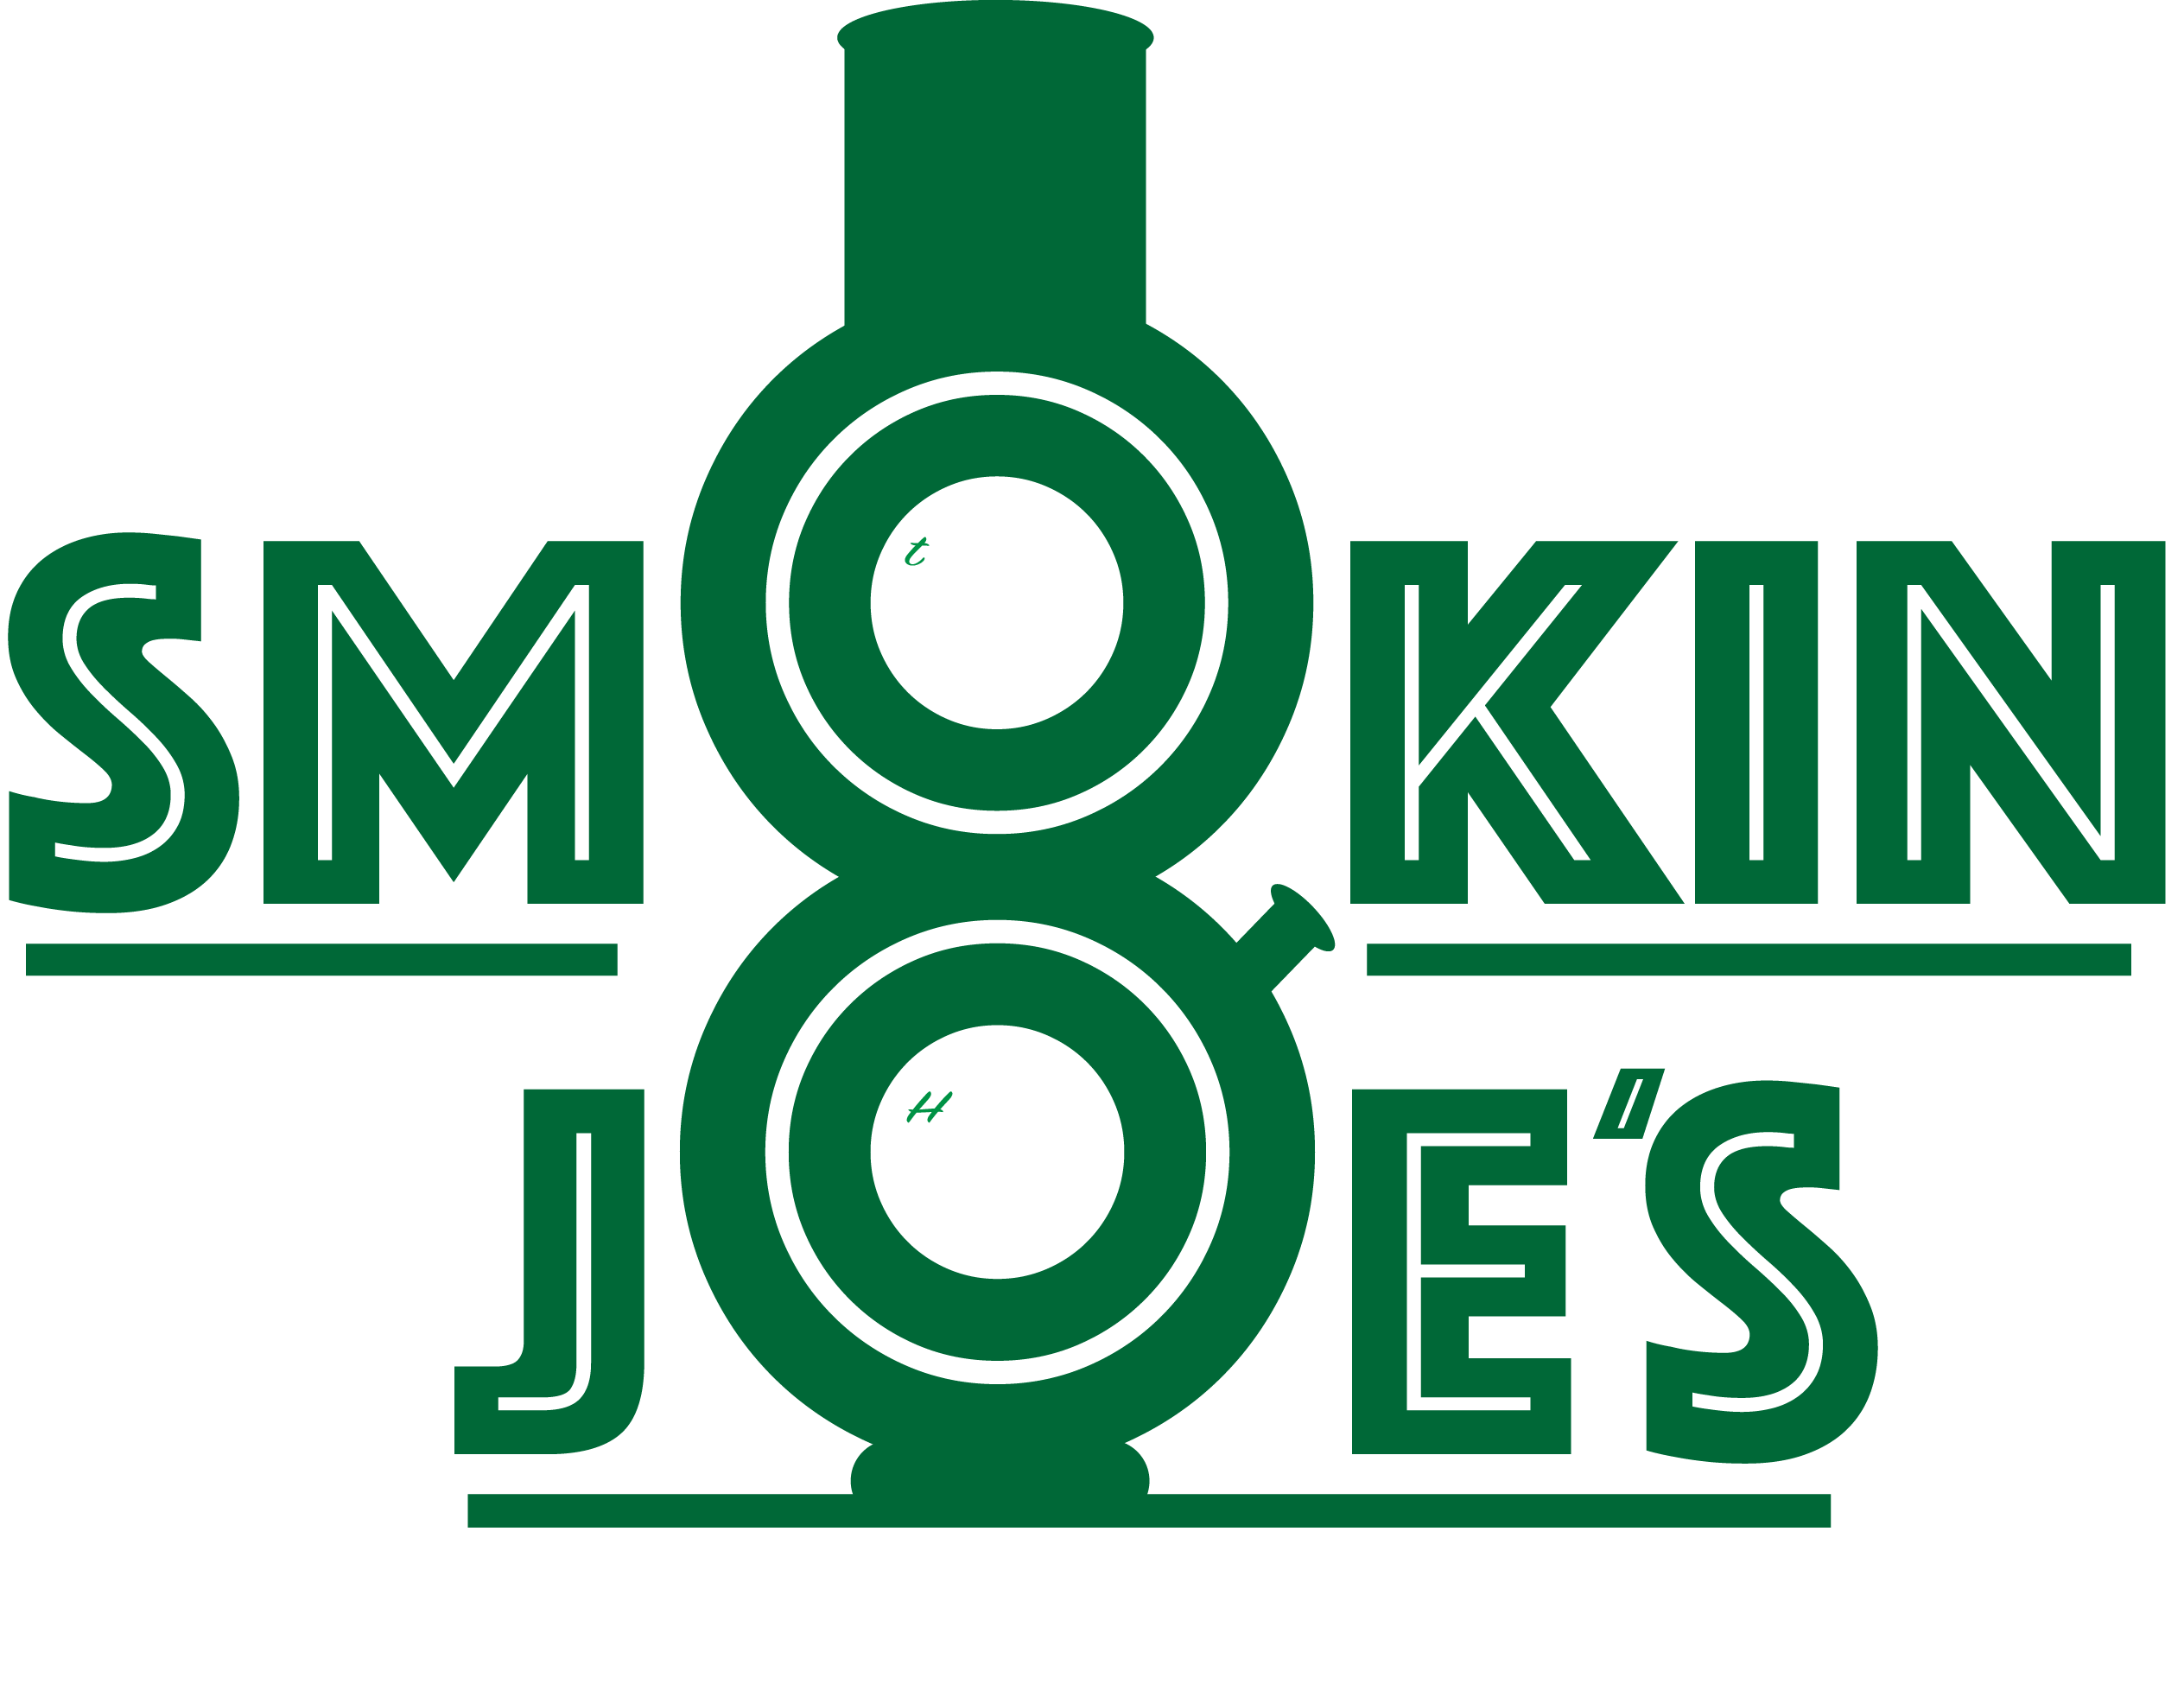 A logo for a Colorado dispensary